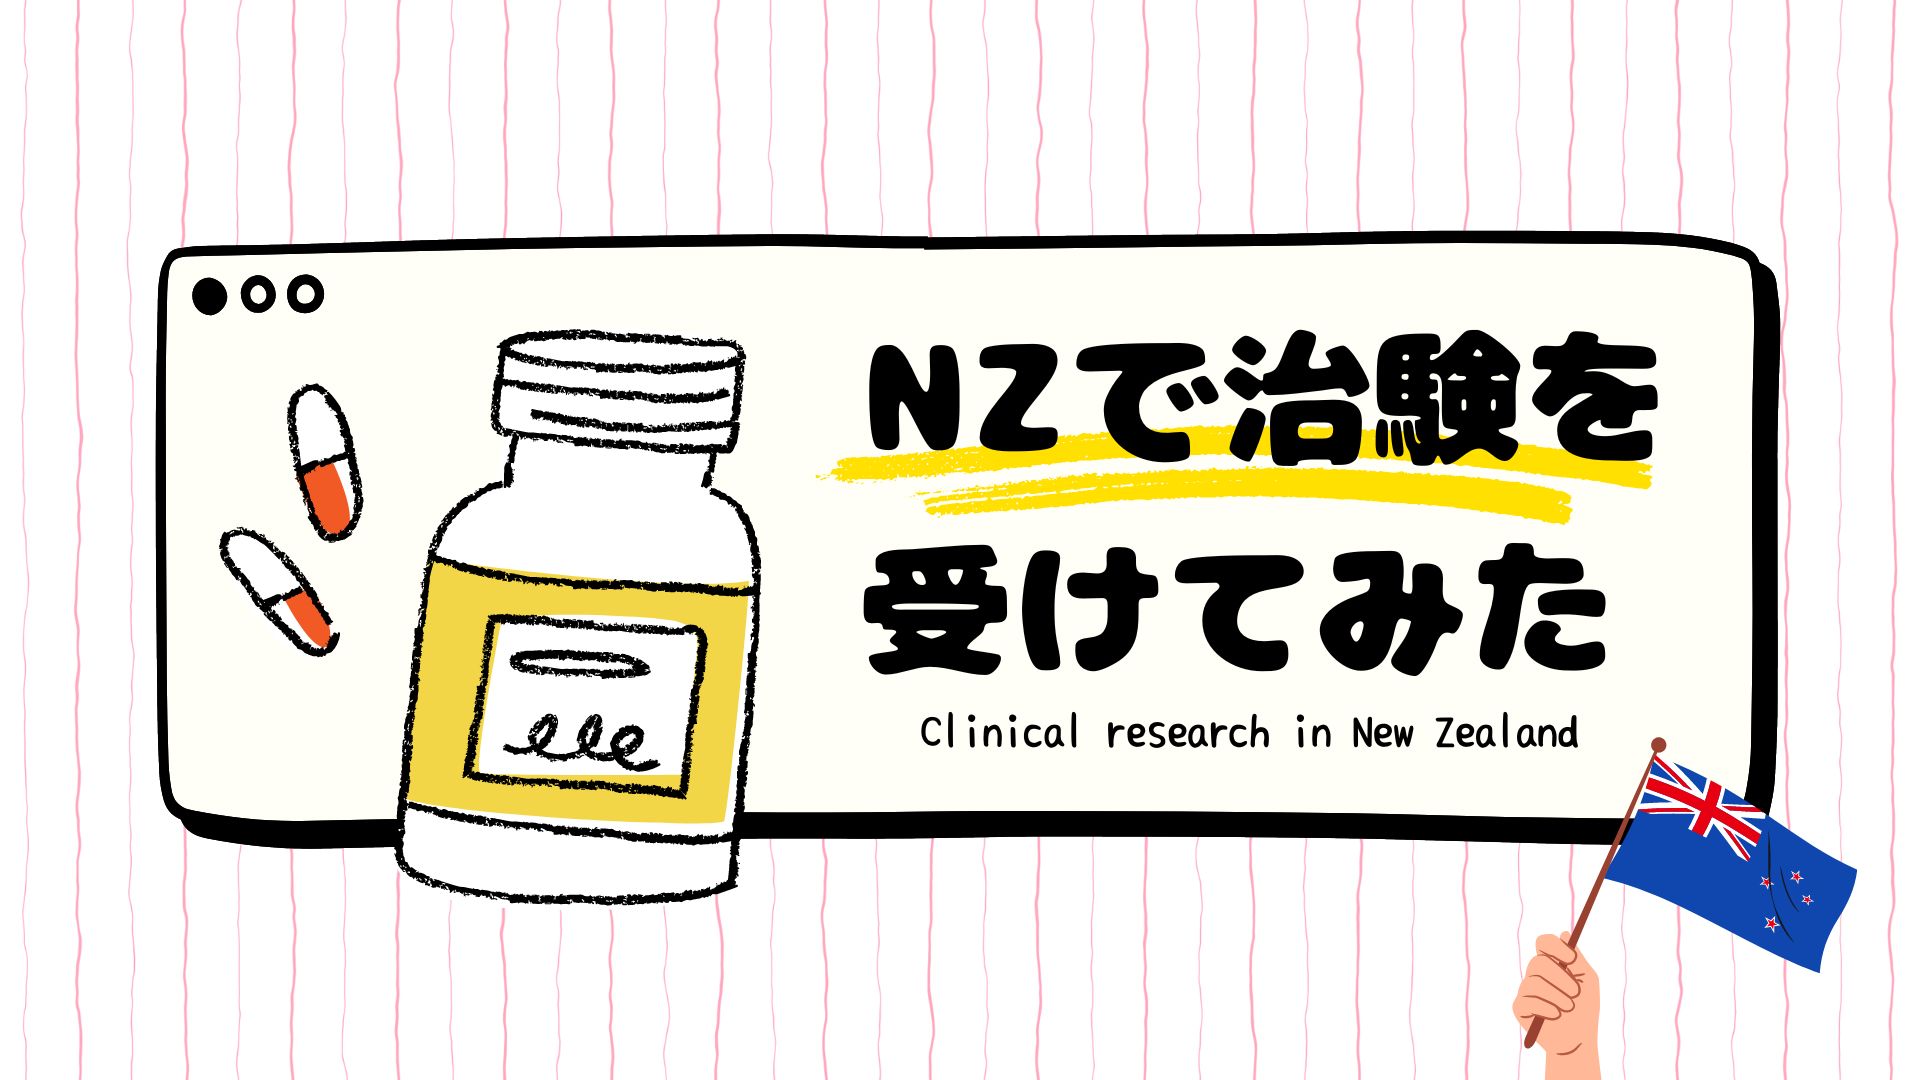 ニュージーランド、治験、クリニカルリサ―チ、オークランド、clinical research, new zealand, auckland, アイキャッチ画像